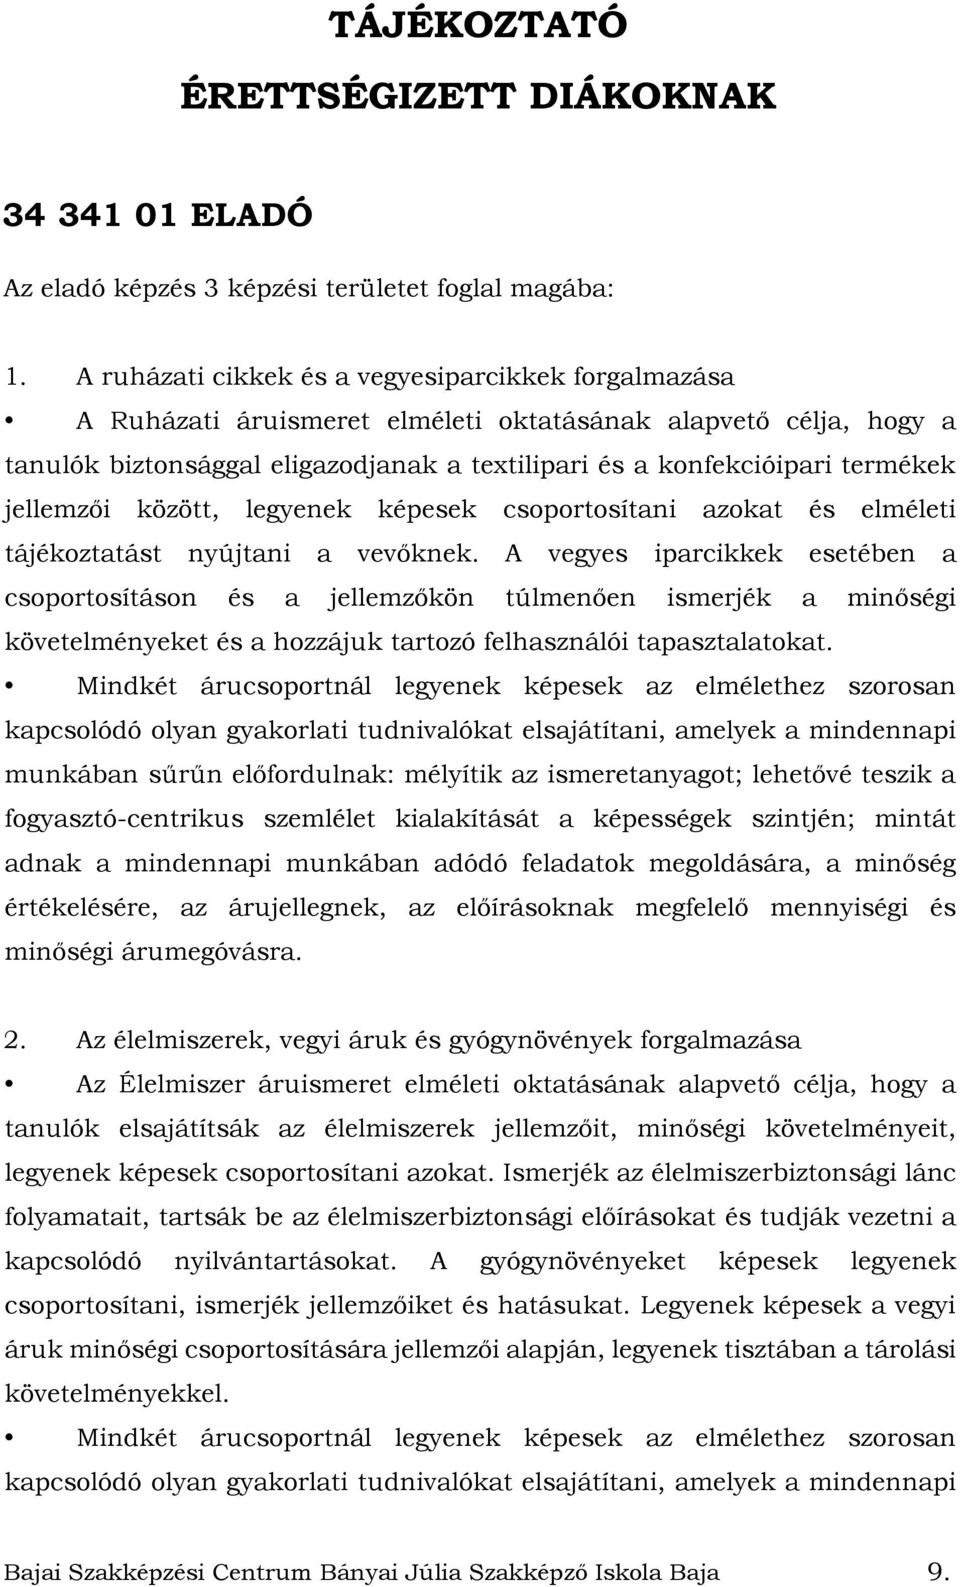 Bajai Szakképzési Centrum Bányai Júlia Szakképző Iskola Baja - PDF Ingyenes  letöltés